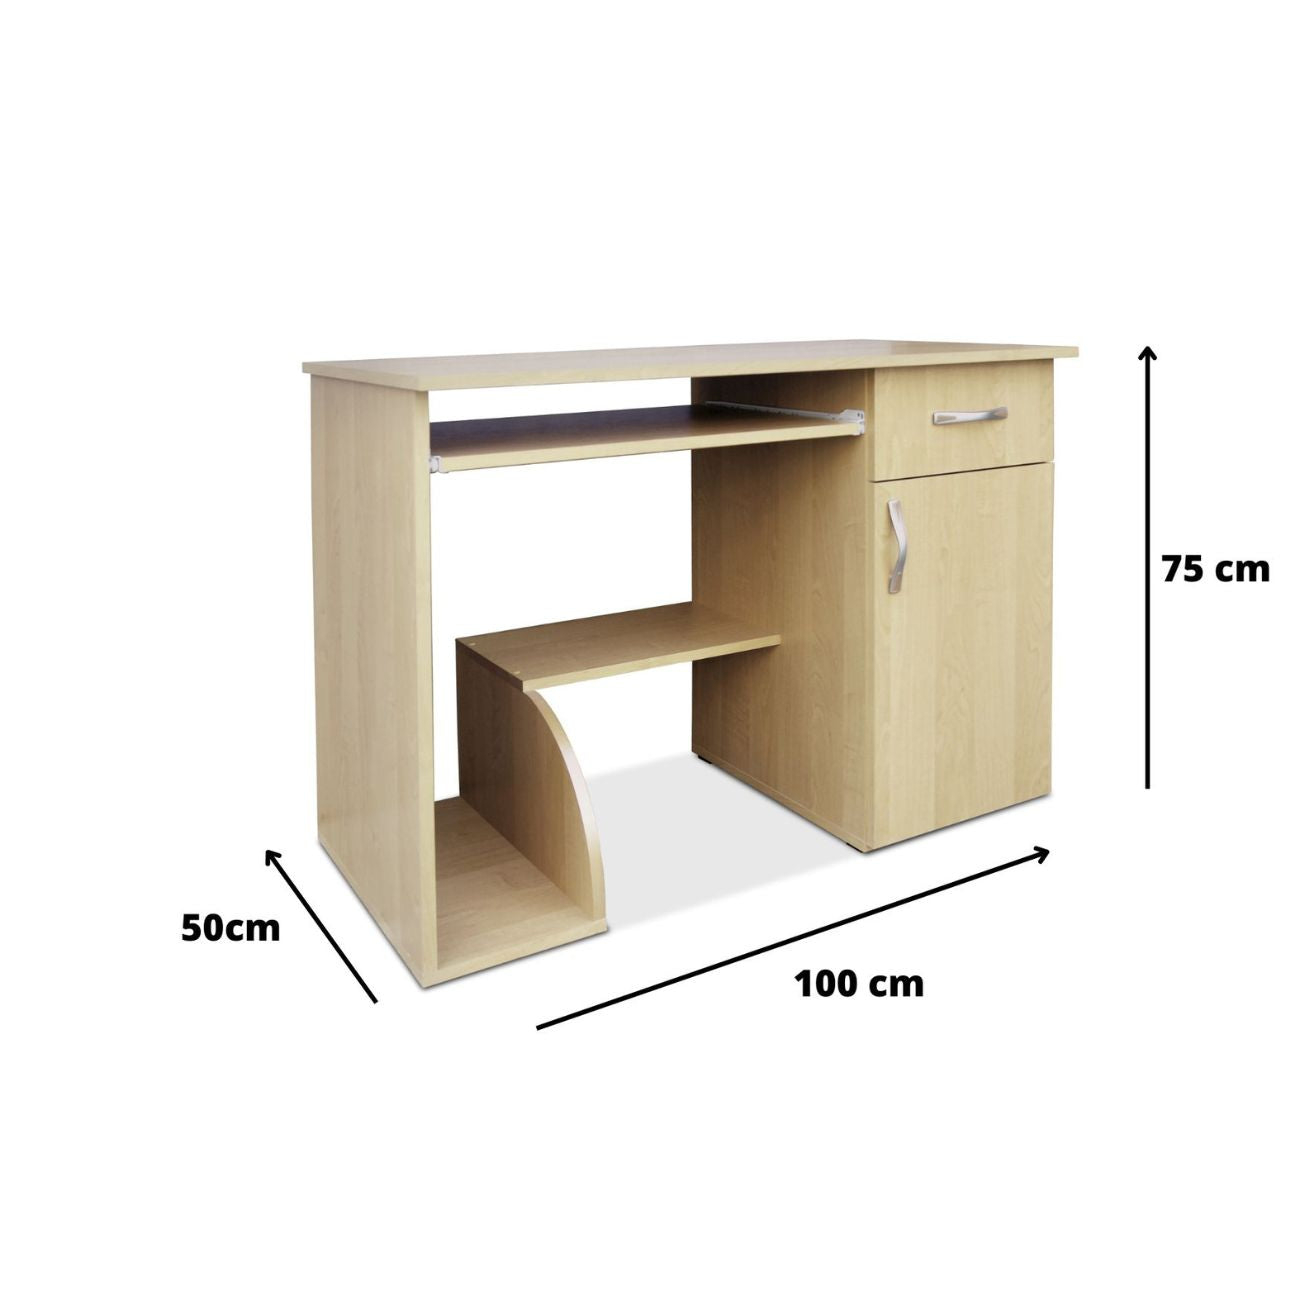 Wymiary małego biurka komputerowego FIFI 100 cm. szuflada są tak dostosowane aby mebel zajmowała niewiele miejsca, a zarazem był funkcjonalny i stabilny.